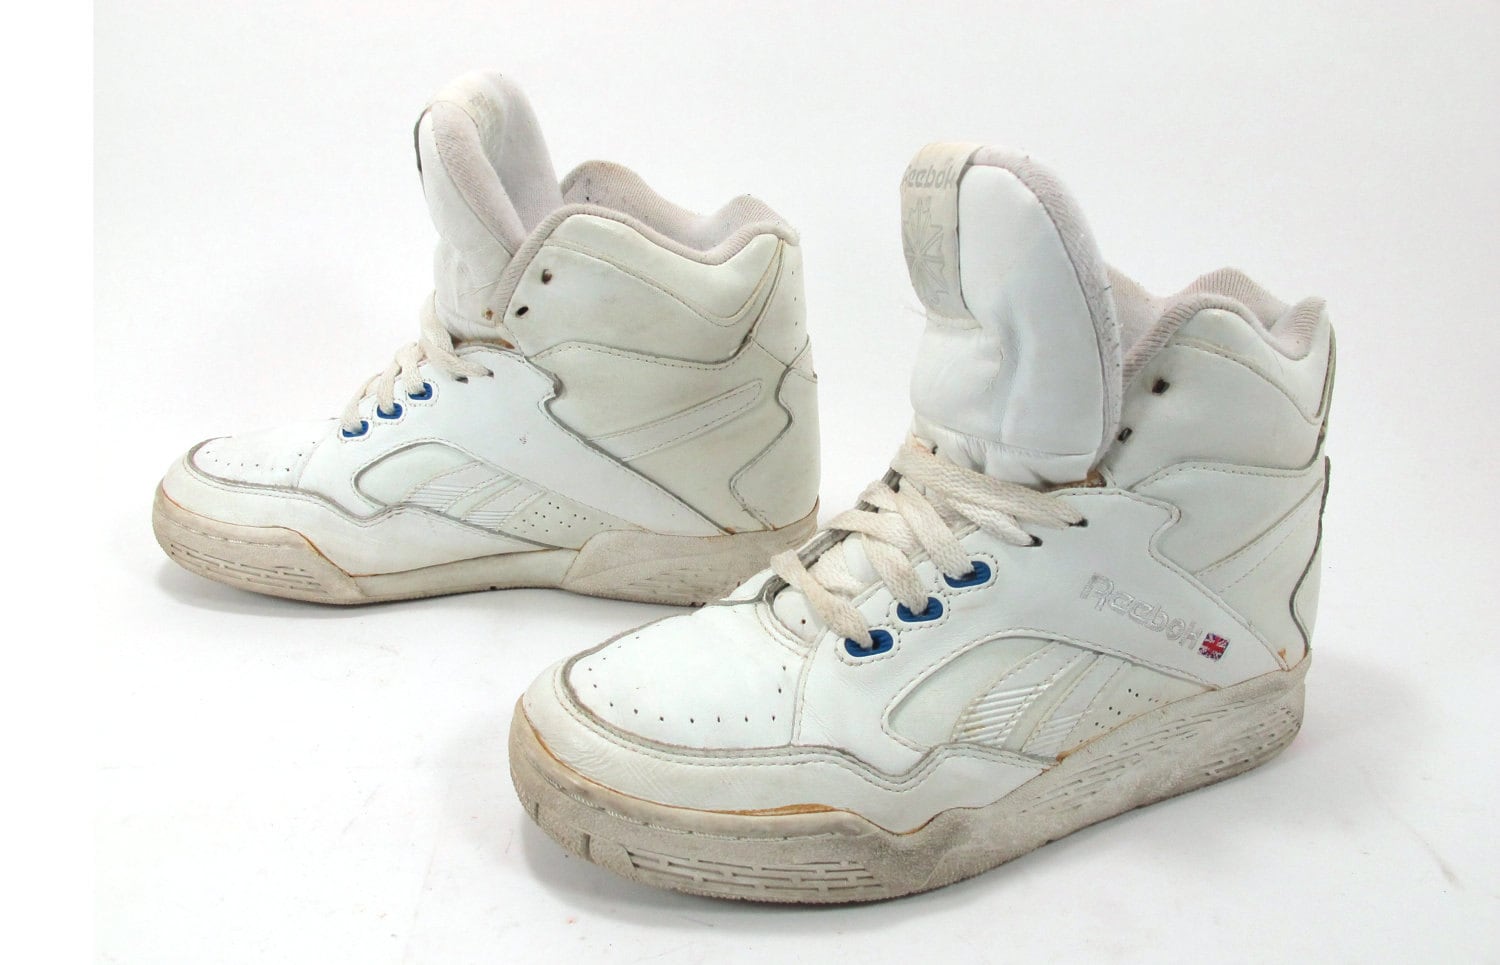 Vintage 1980s Reebok High Top Sneakers Trainers Size by Kokorokoko